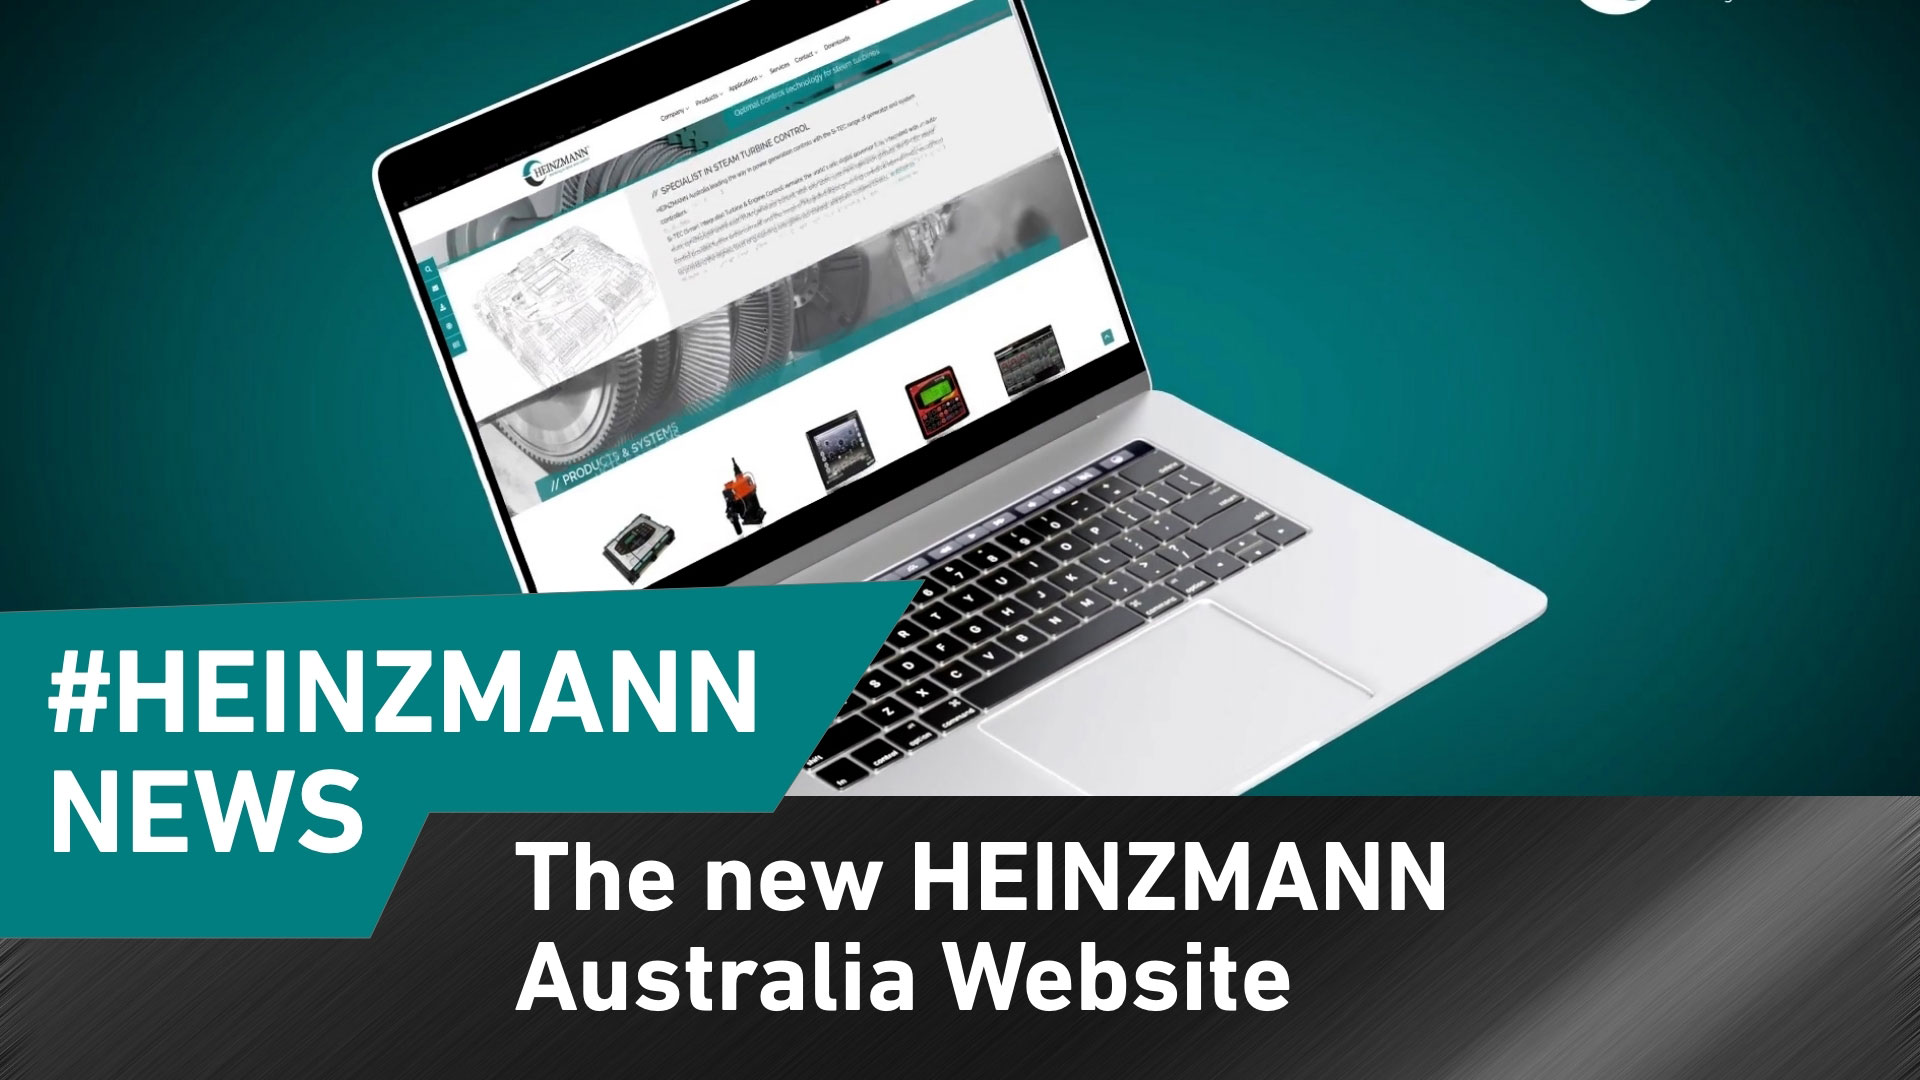 HEINZMANN Australia hat eine neue Webseite